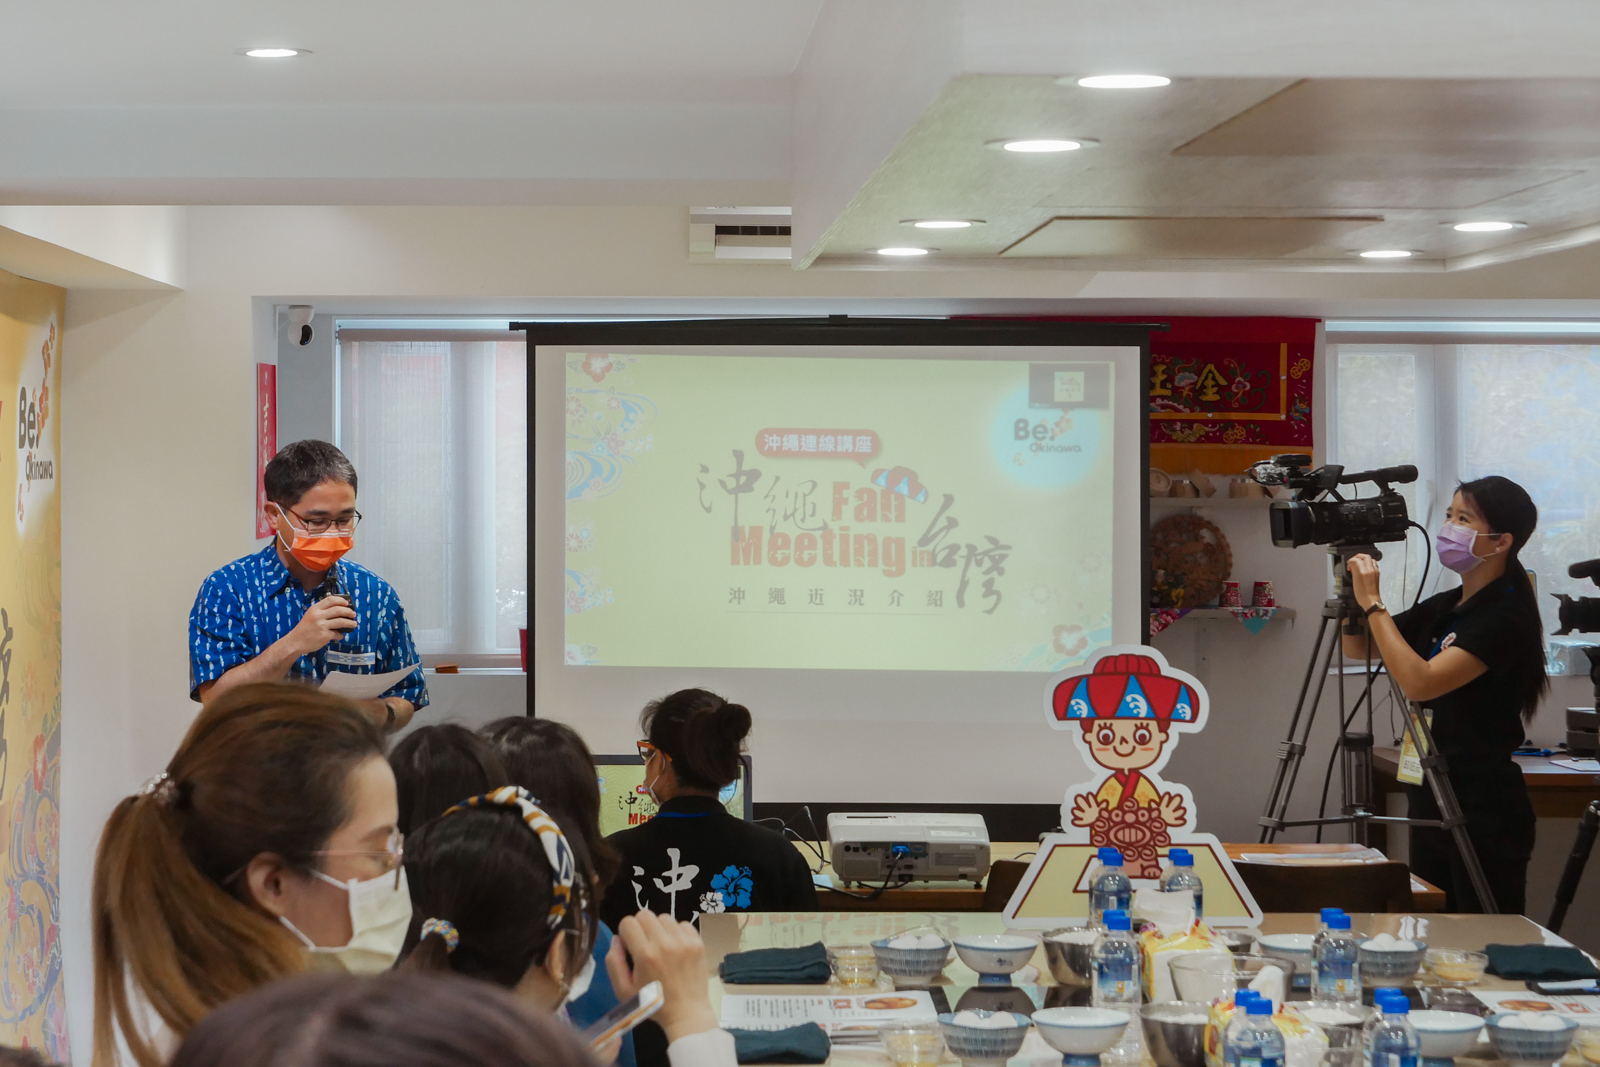 沖繩 Fan Meeting in 台灣 2021 連線講座 琉球糕點教室開口笑體驗